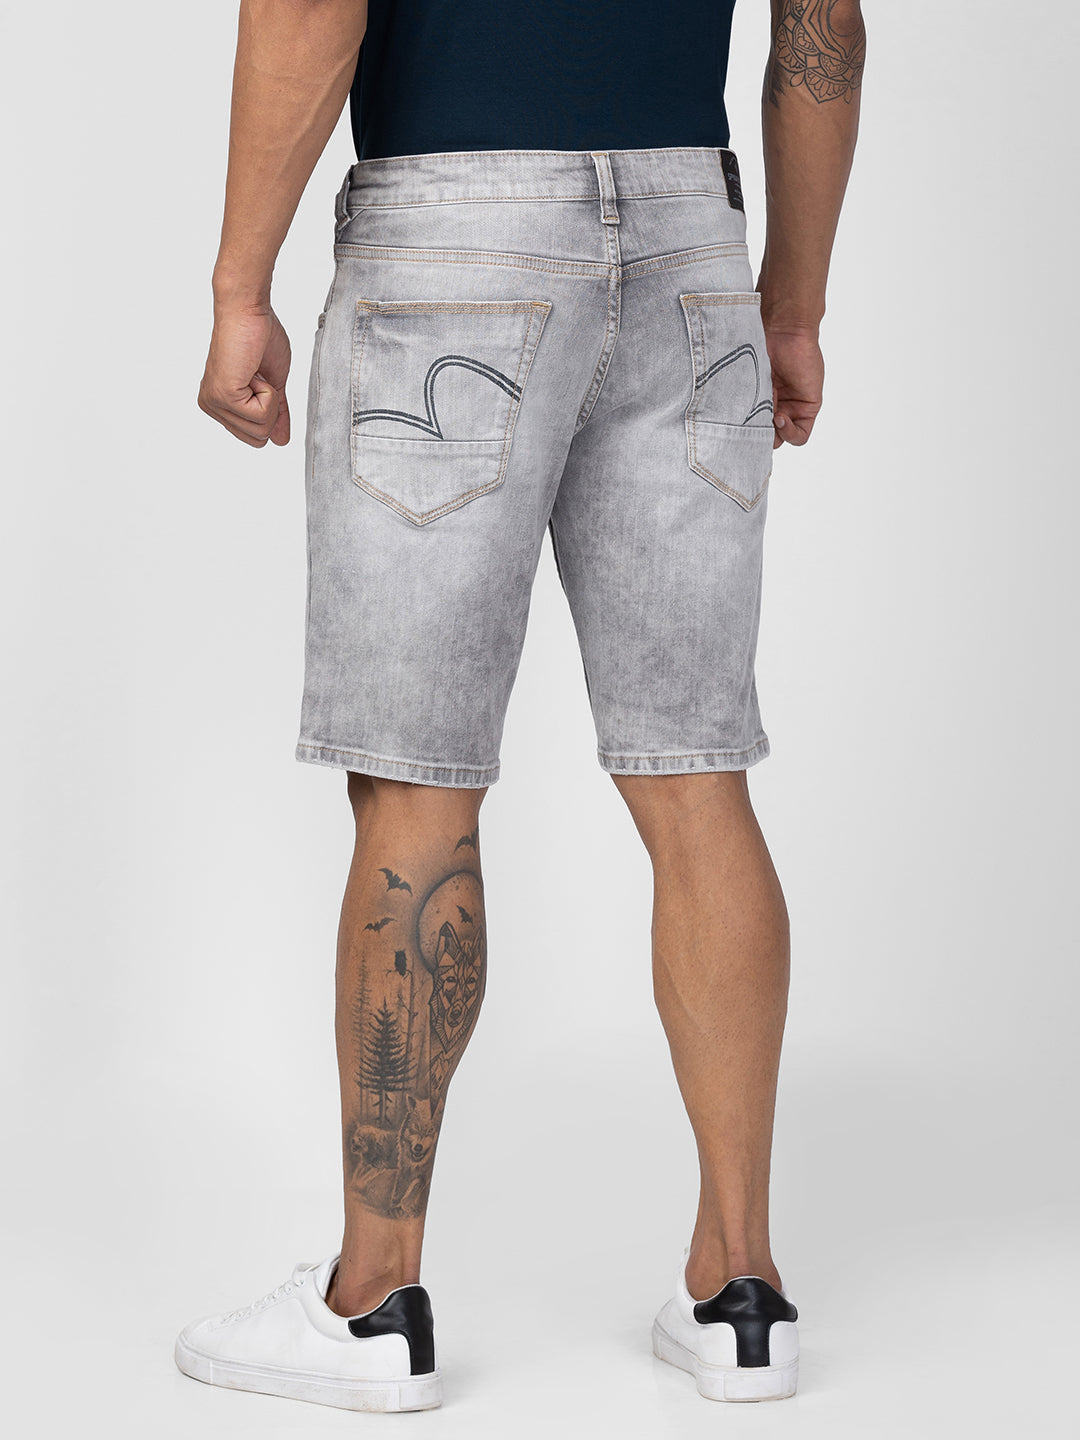 Extra Slim Fit Men's Jean Shorts -S3DY05Z8-309 - S3DY05Z8-309 - LC Waikiki